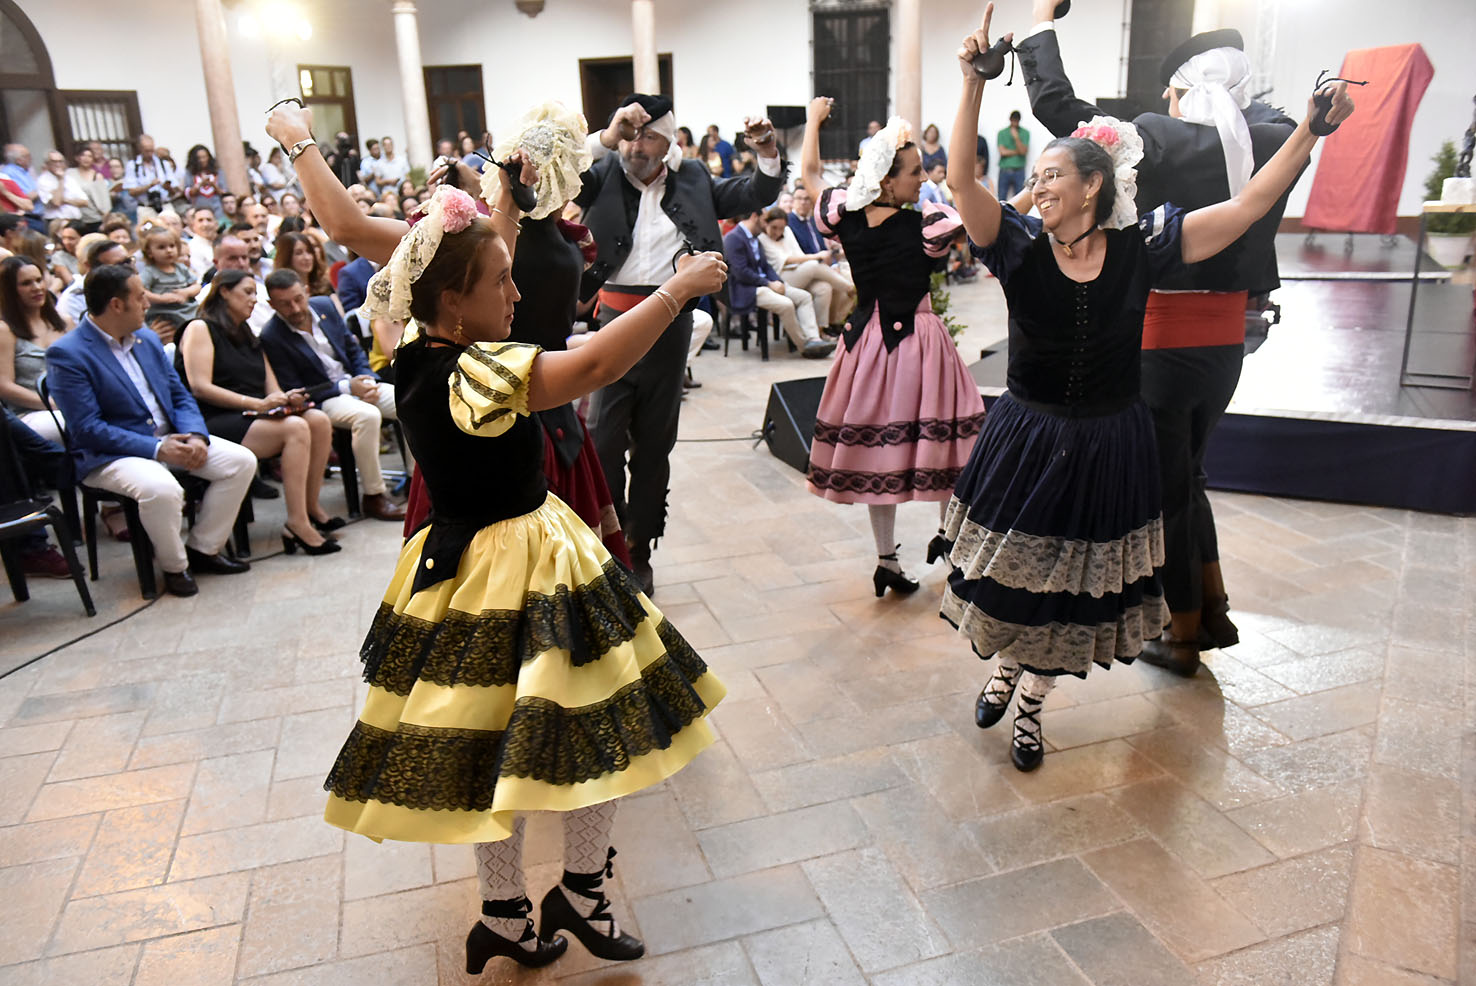 Antequeranos bailando el fandango, baile típico de Antequera